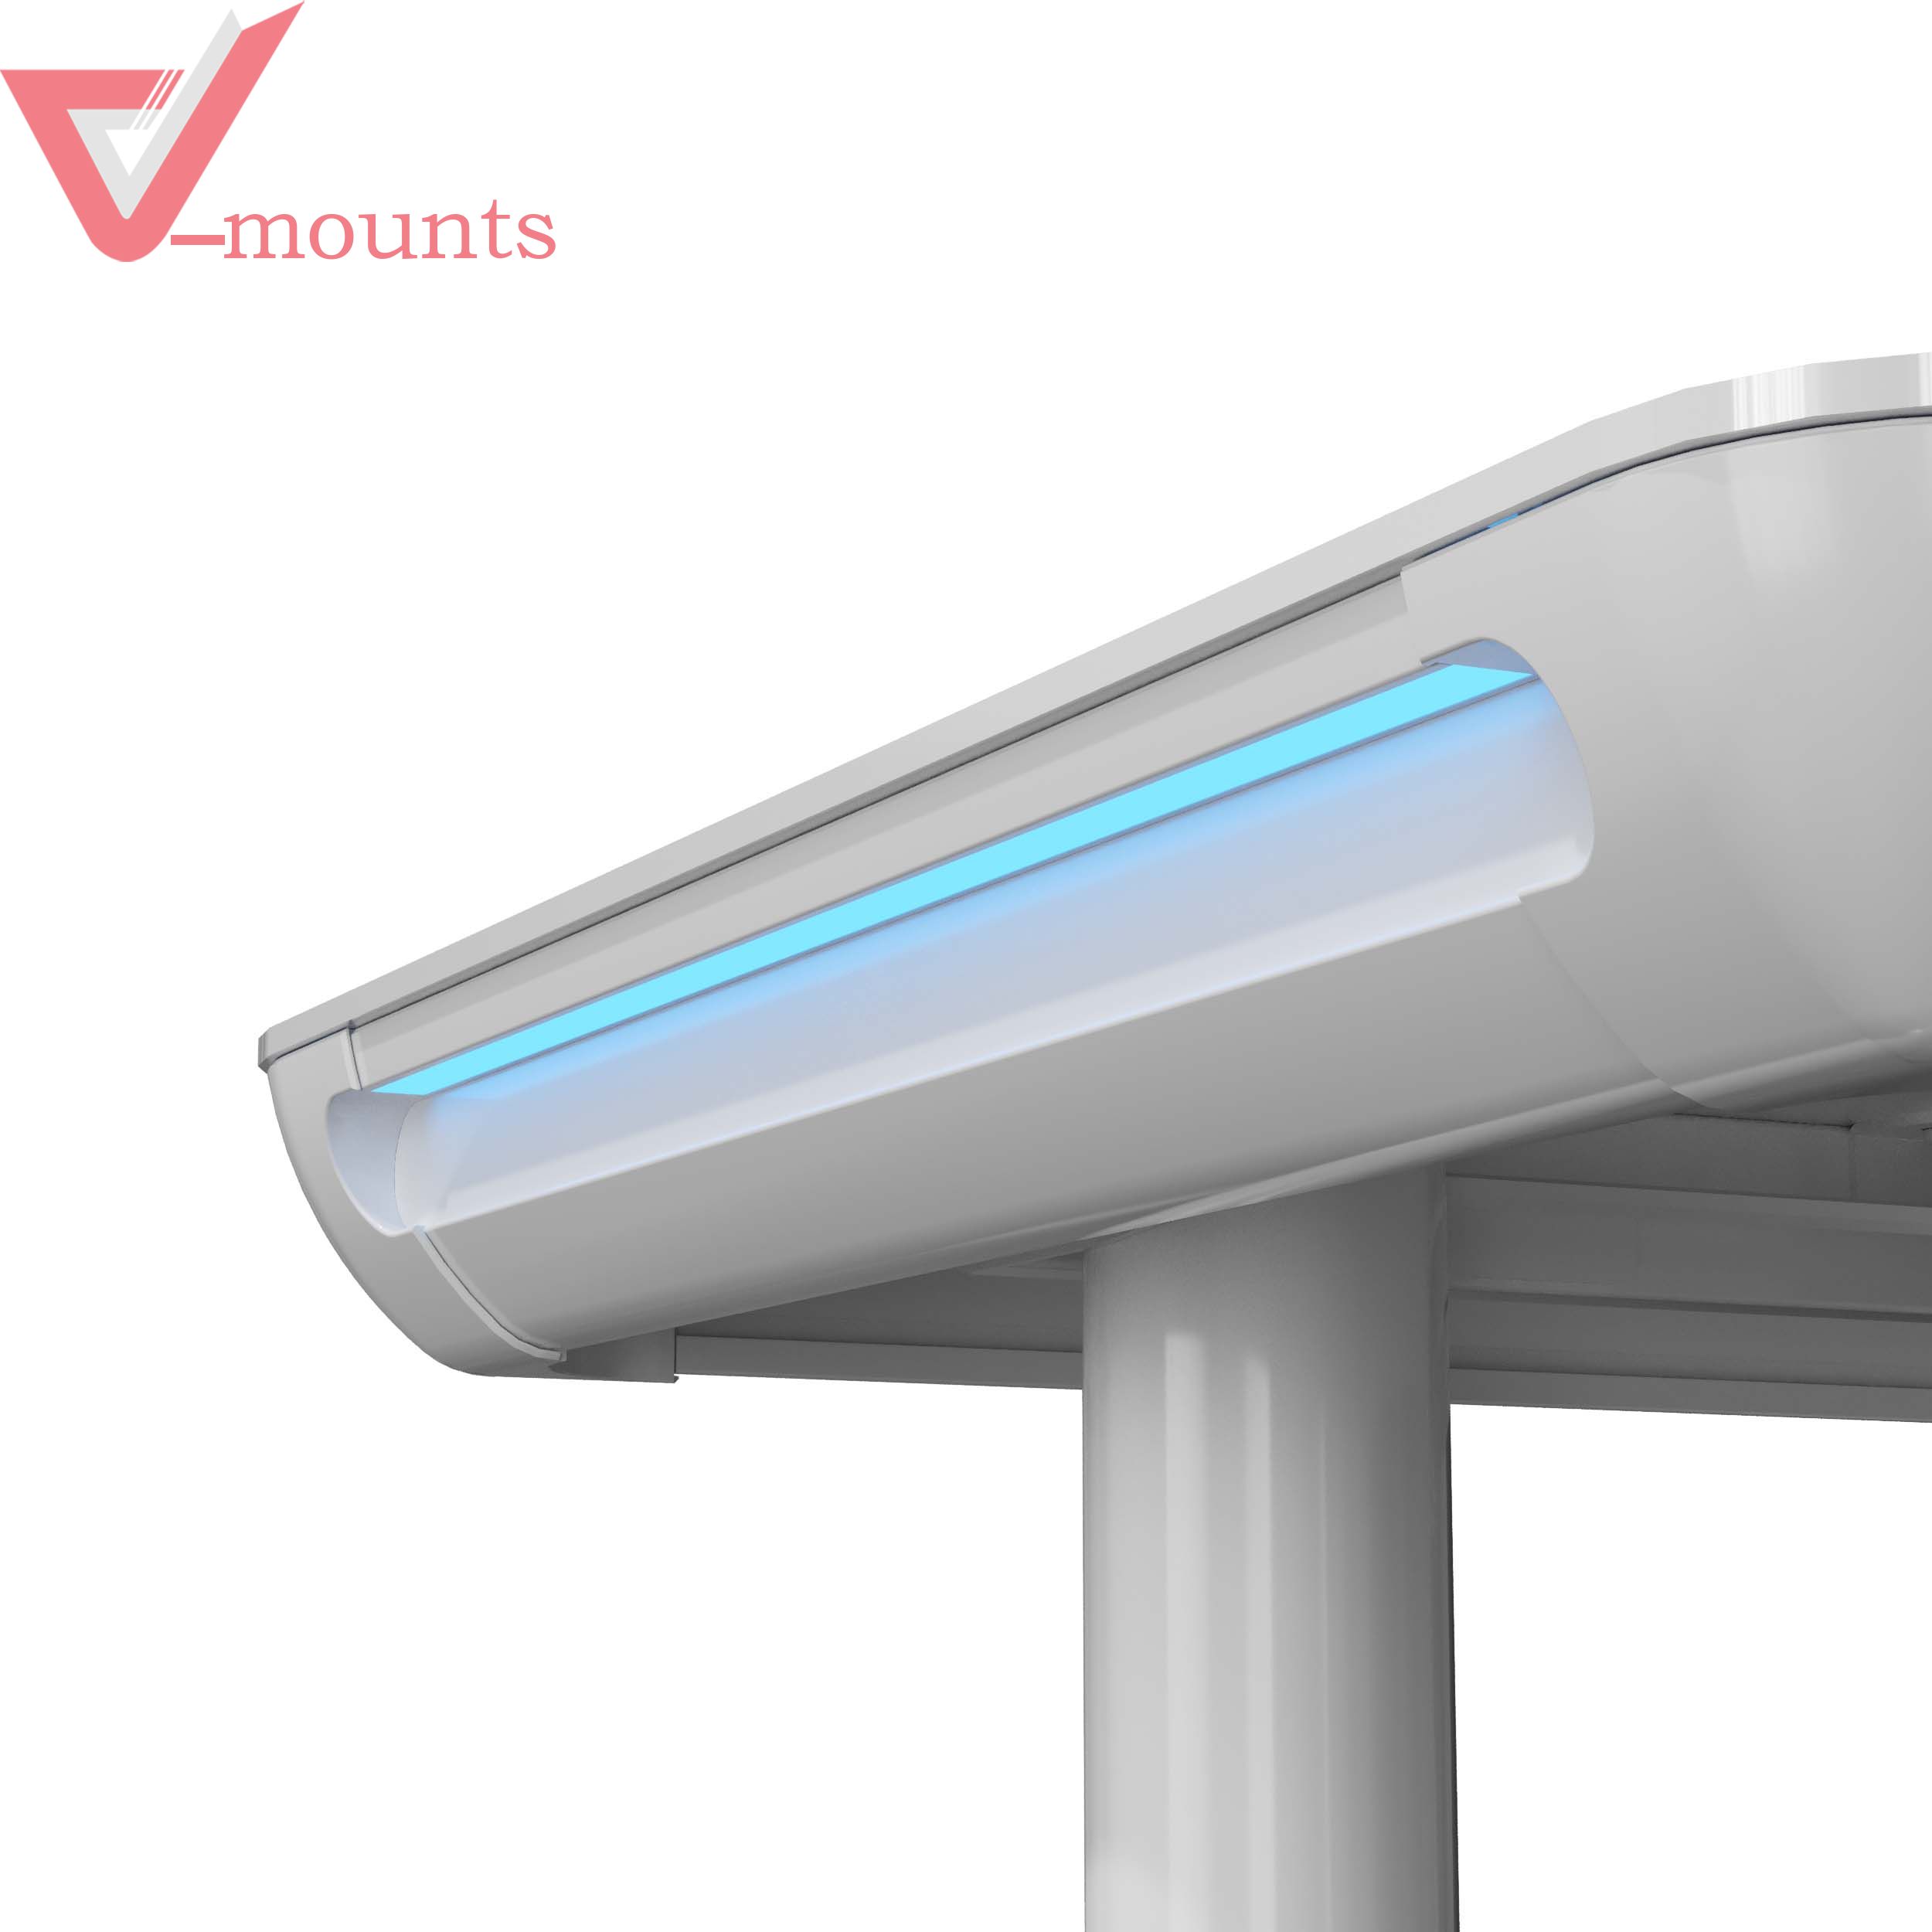 V-mounts Tempered Glass Electric Height Adjustable Desk VM-JSD5-03-G3